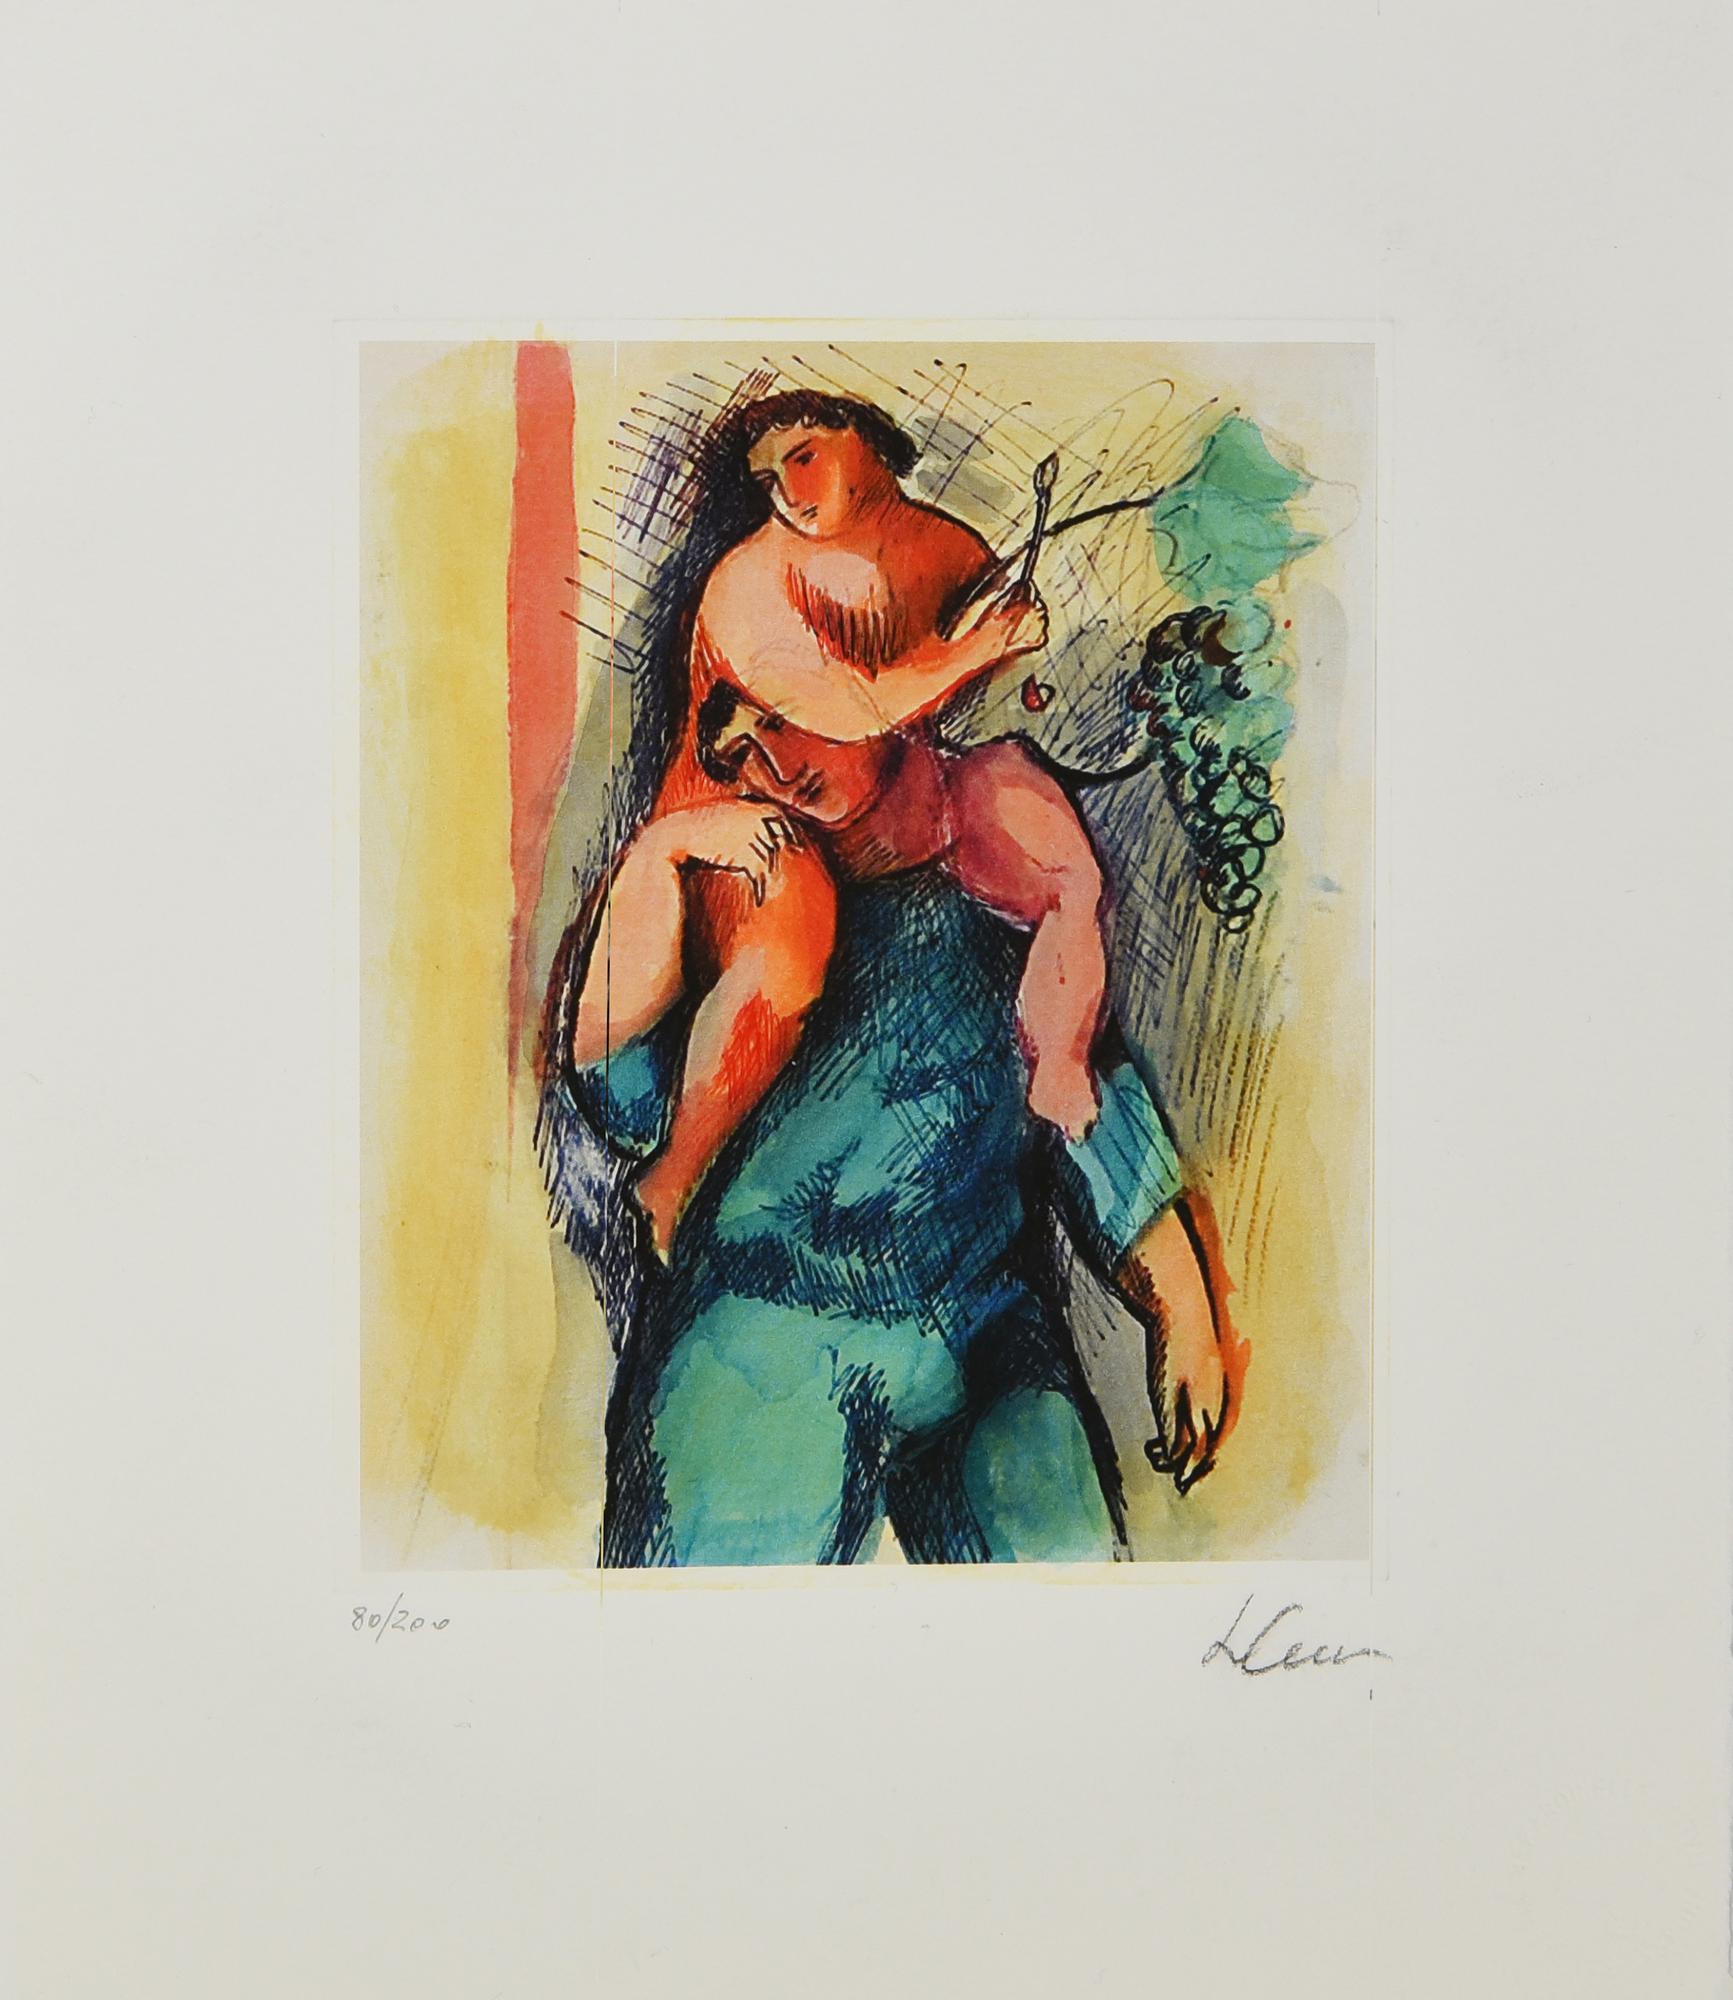 Sandro Chia (1946) SENZA TITOLO acquaforte-acquatinta, cm 19x15,5, su foglio...